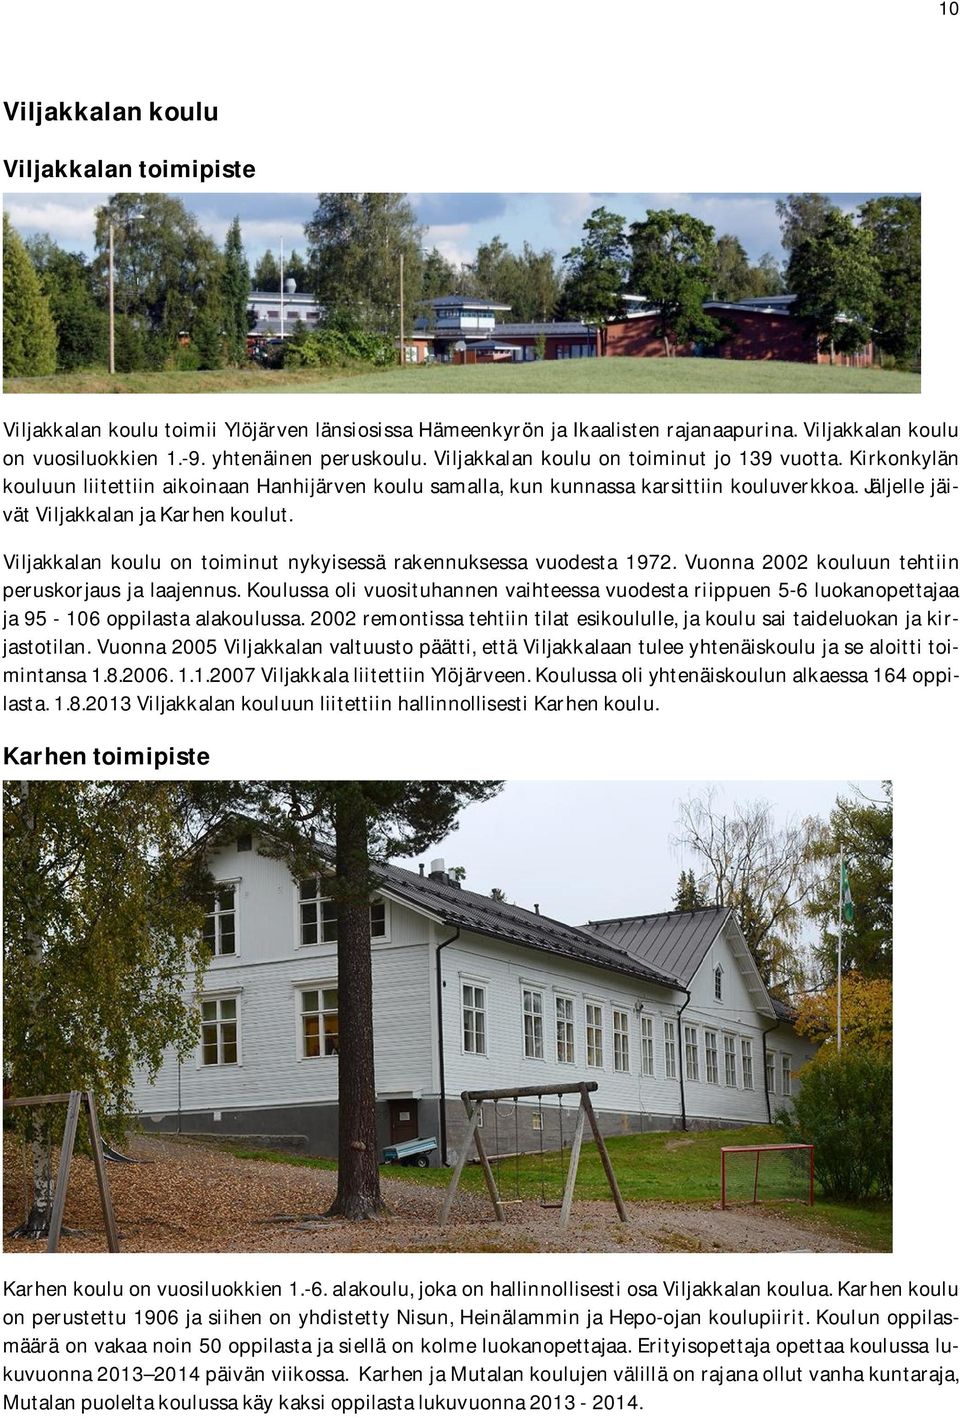 Viljakkalan koulu on toiminut nykyisessä rakennuksessa vuodesta 1972. Vuonna 2002 kouluun tehtiin peruskorjausja laajennus.